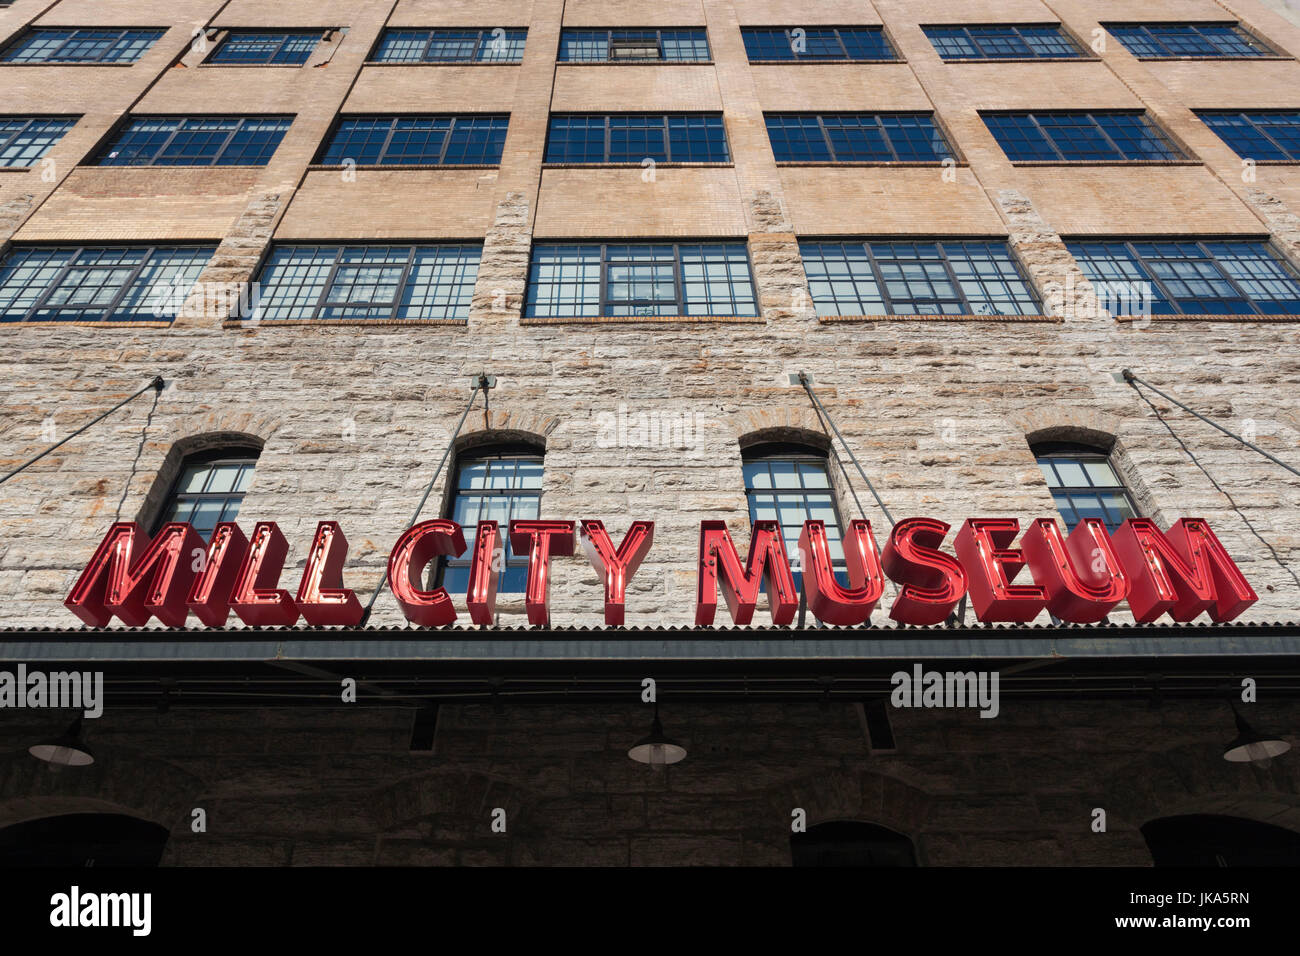 USA, Minnesota, Minneapolis, Mill City Museum, exterior Stock Photo